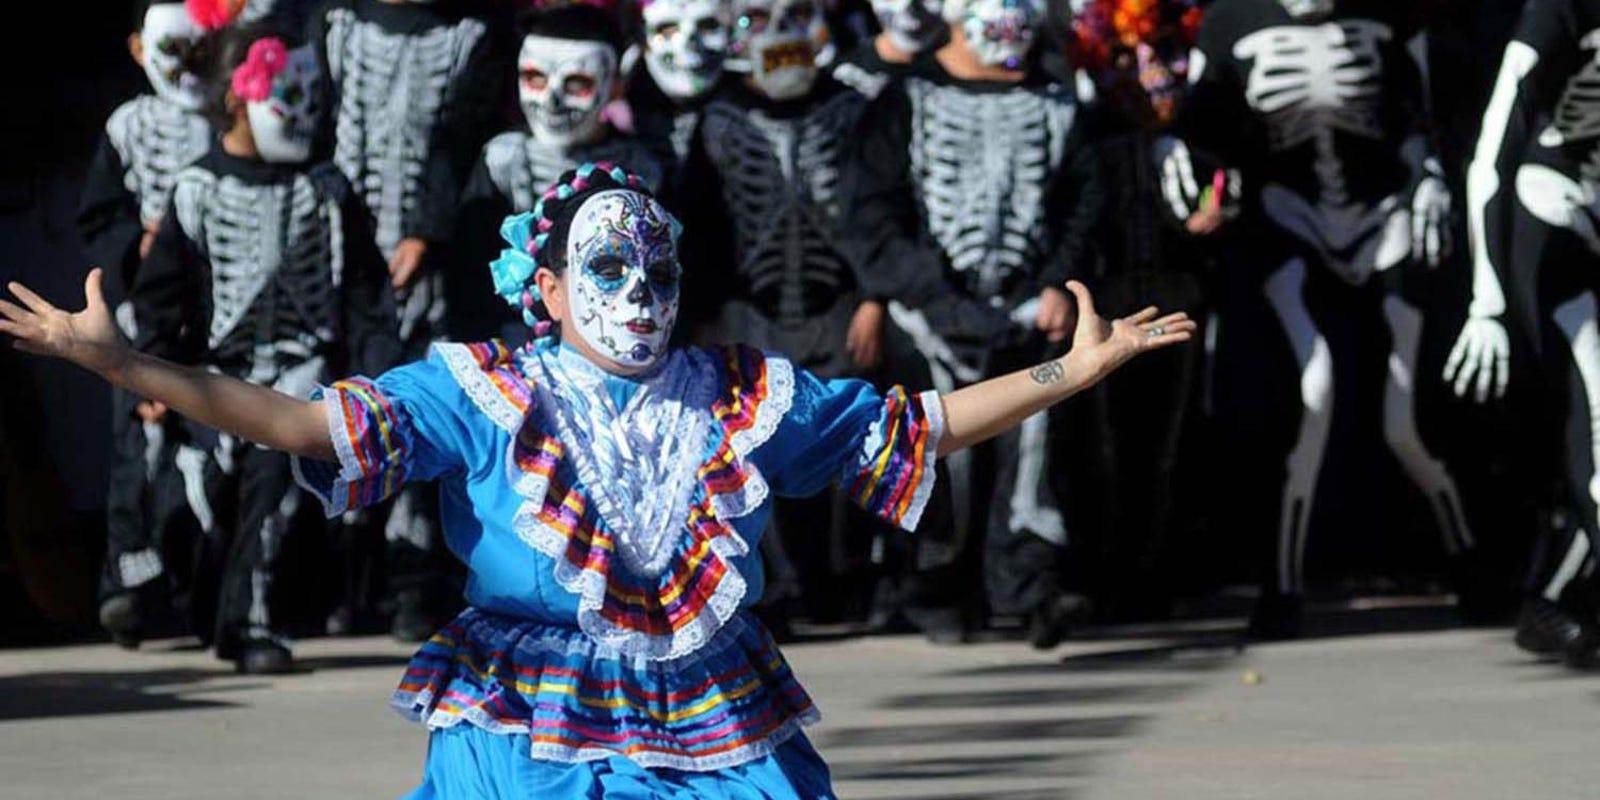 Celebrate Día de los Muertos or Day of the Dead in Las Cruces